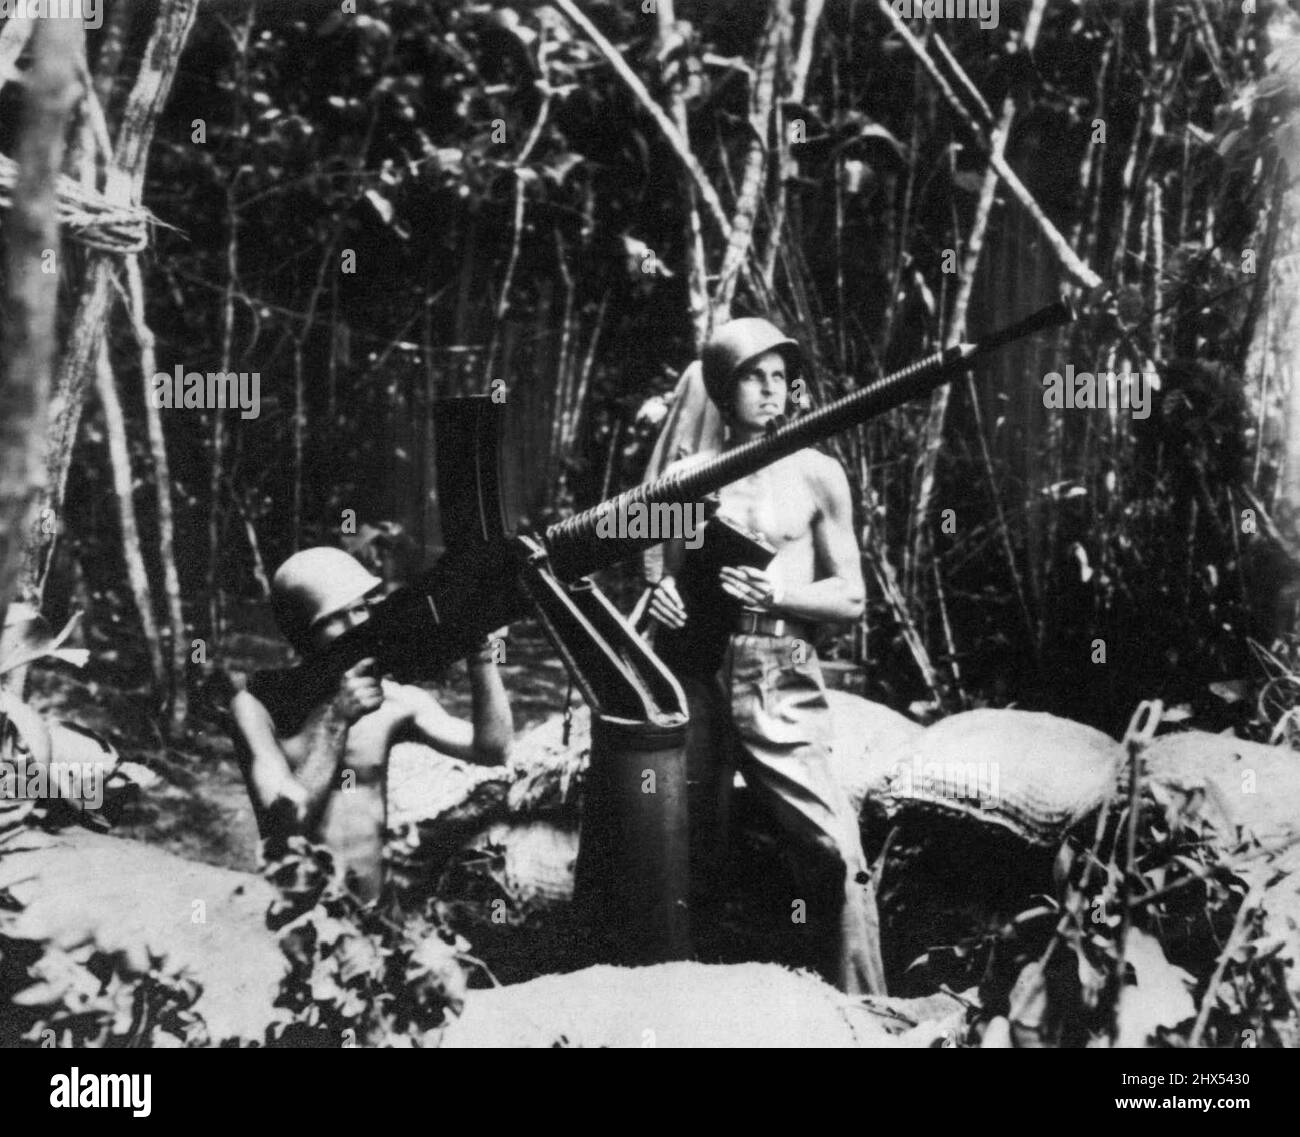 Shoot JAP avec leurs propres Shells -- toutes les coquilles tirées à Jap avions quand ils font leurs raids fréquents sur l'aéroport de Guadalcanal ne sont pas américaines. Il est monté près de l'aéroport. Mitrailleuse Jap de calibre 50, capturée lorsque les Marines ont pris l'île. 29 octobre 1942. (Photo par AP Wirephoto). Banque D'Images